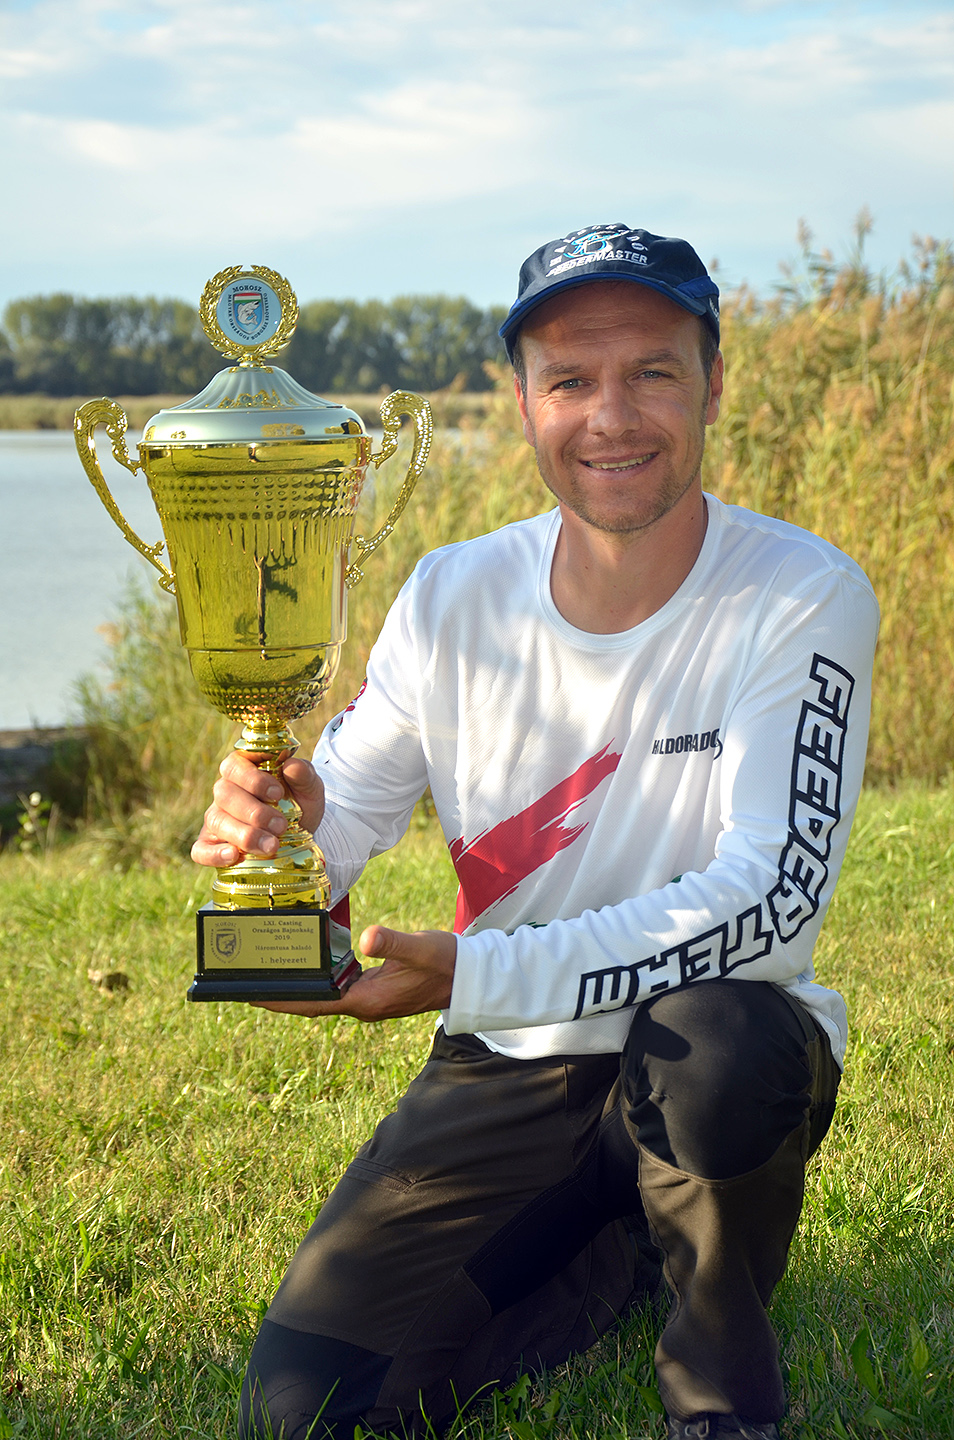 Nagyon büszkék vagyunk Pintér Zoltán kollégánk LXI. Casting Országos Bajnokság – Háromtusa Haladó kategóriában elért magyar bajnoki címére is!